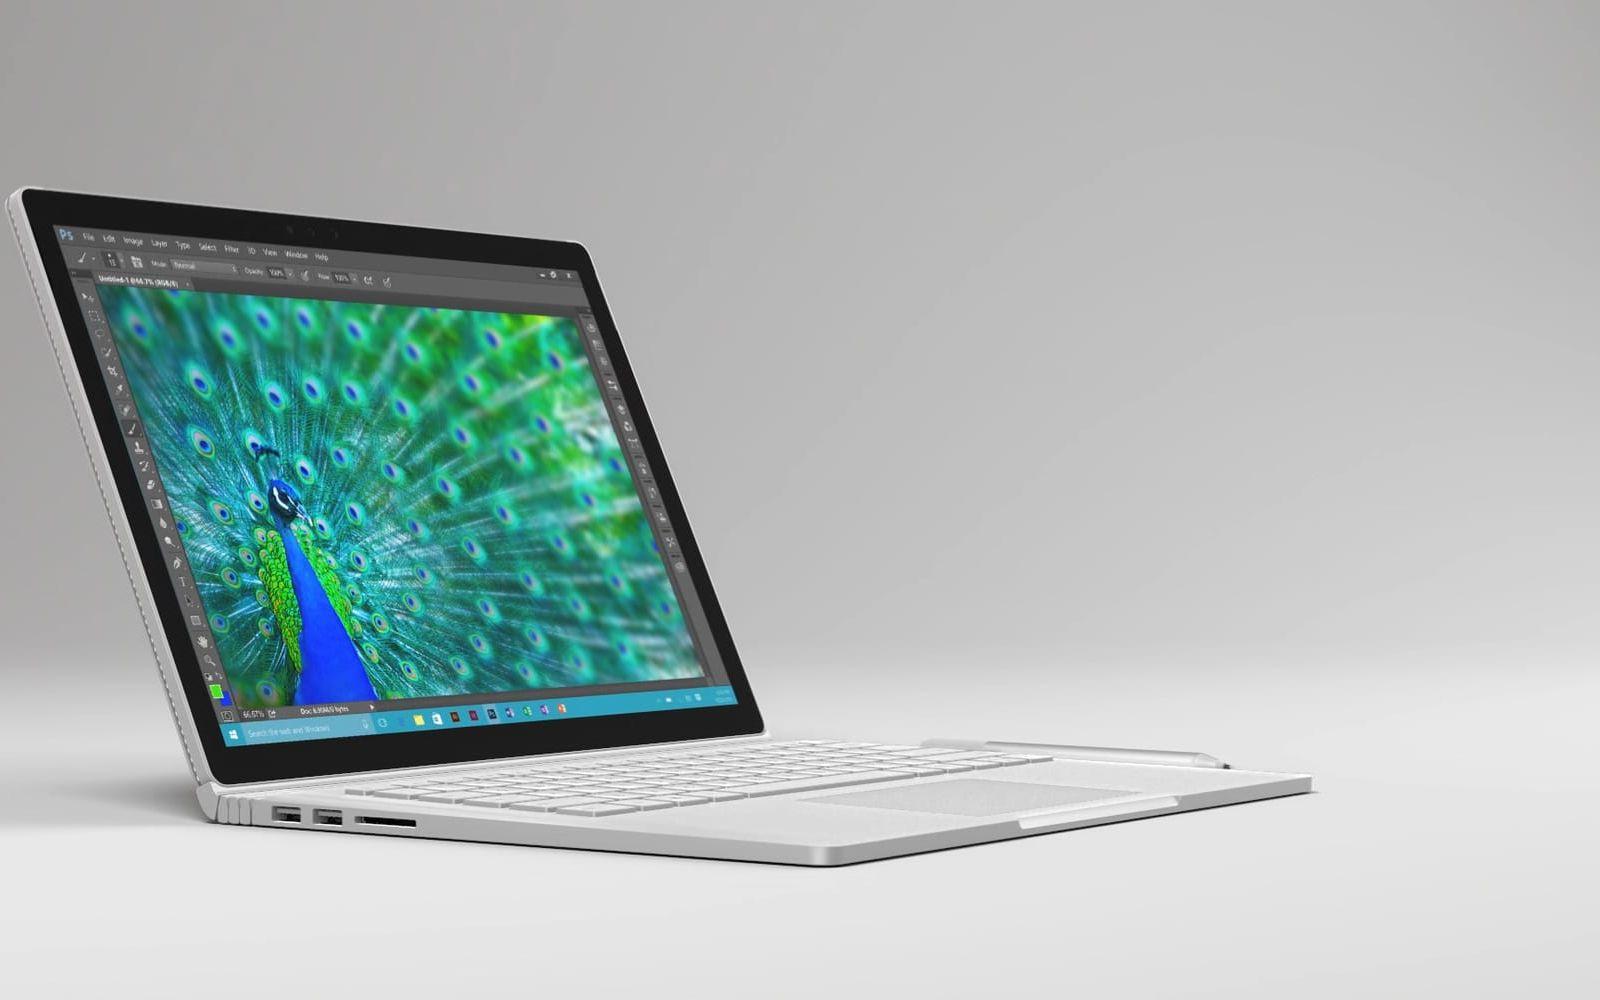 Microsoft Surface Book. Det kom en ny Surface Book i oktober 2016 och recensionerna var positiva. Kommer de släppa en uppdatering 2017?